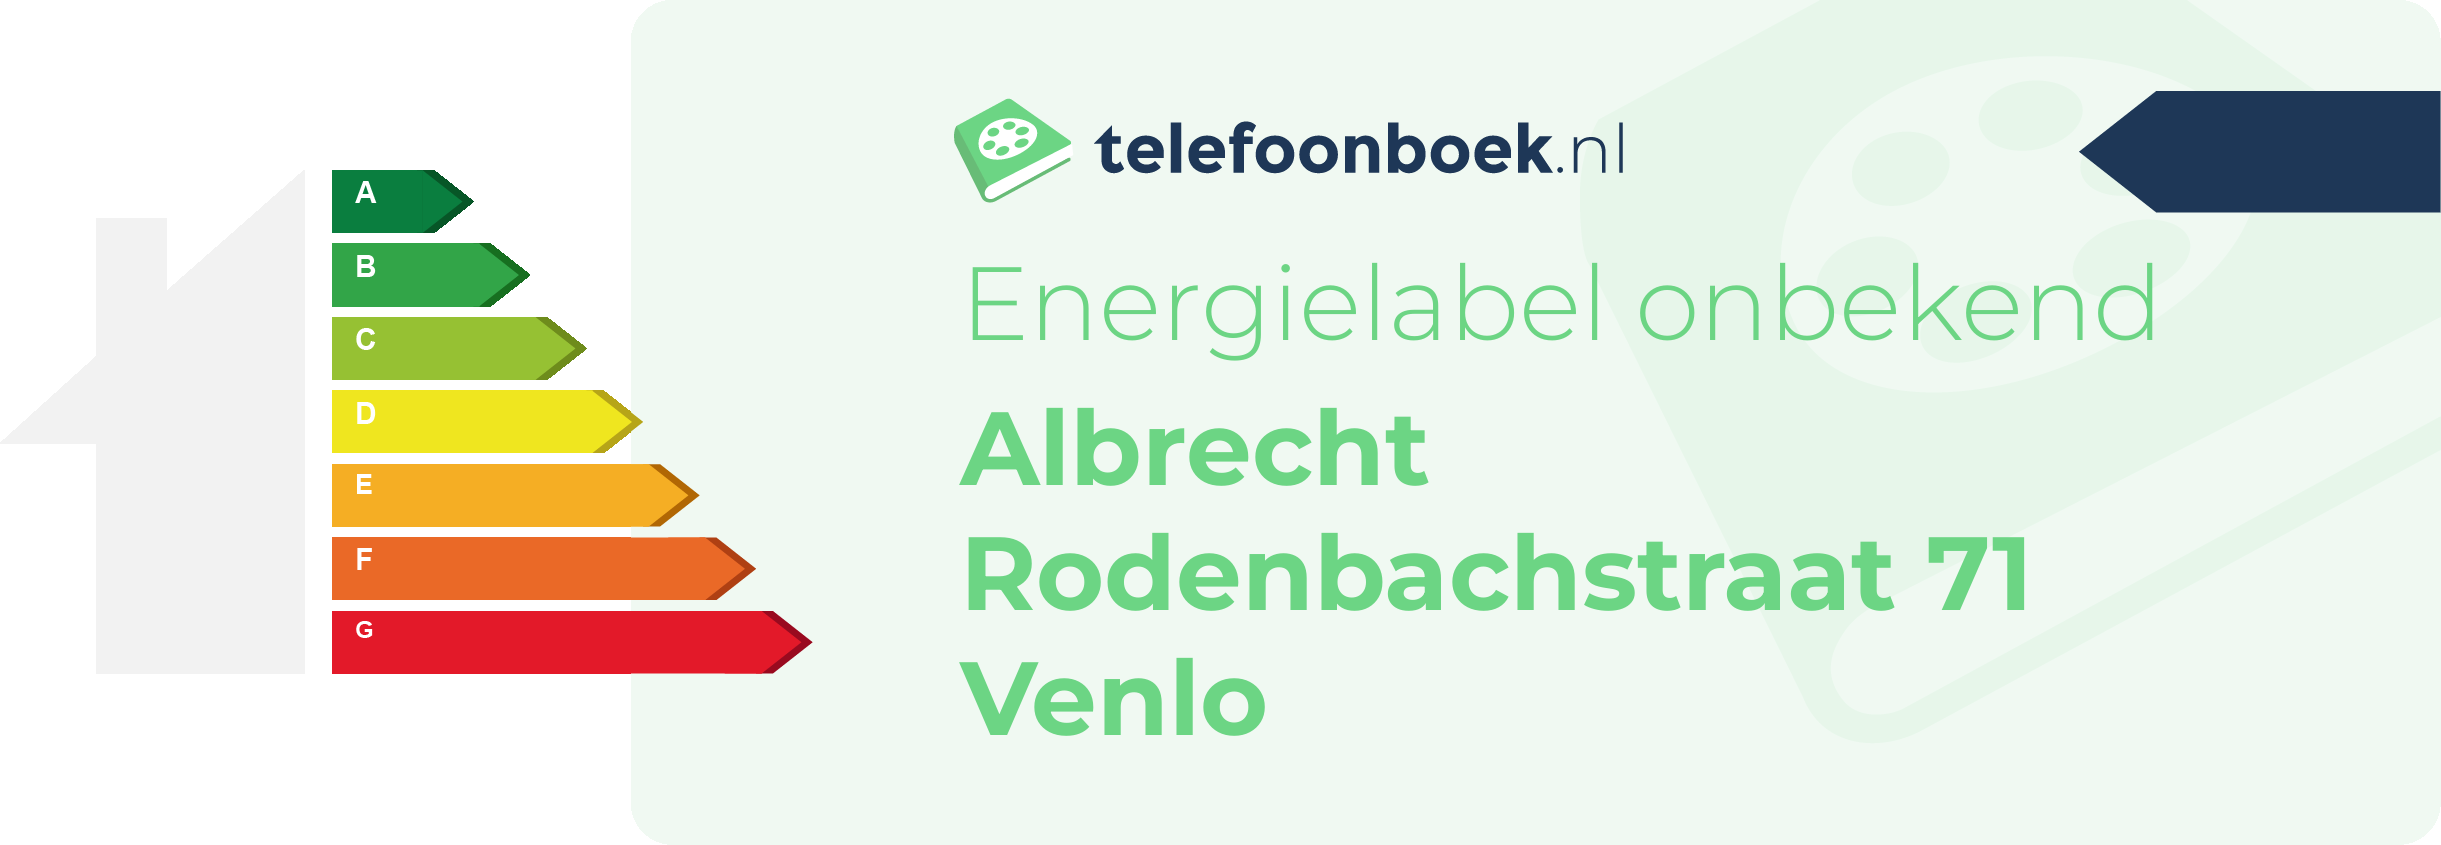 Energielabel Albrecht Rodenbachstraat 71 Venlo